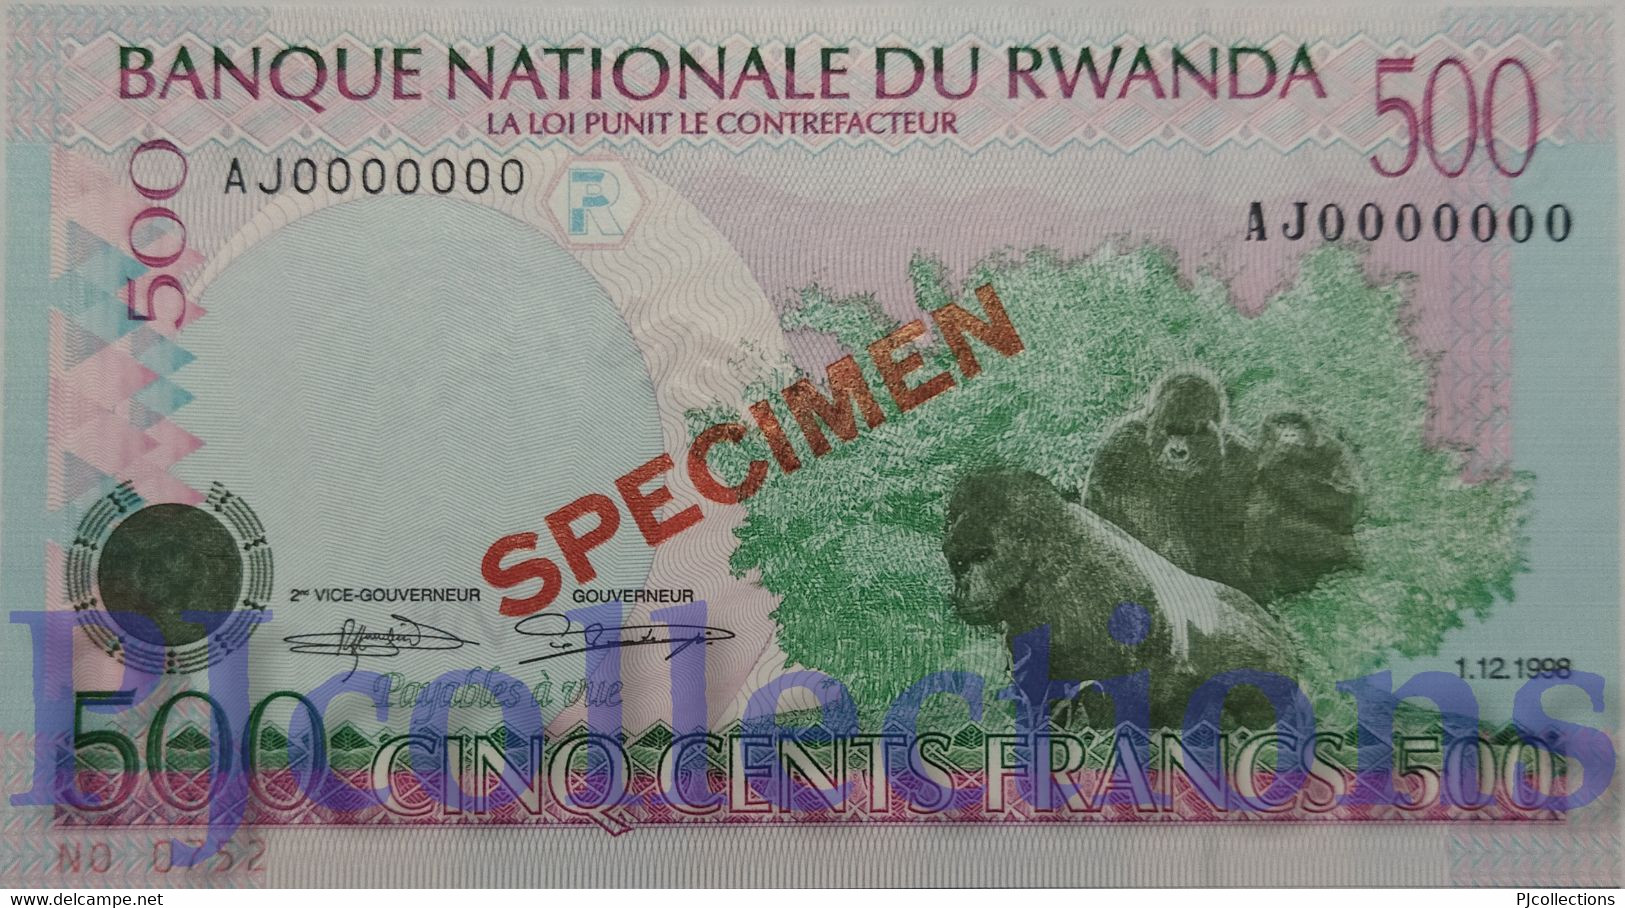 RWANDA 500 FRANCS 1998 PICK 26s SPECIMEN UNC - Rwanda